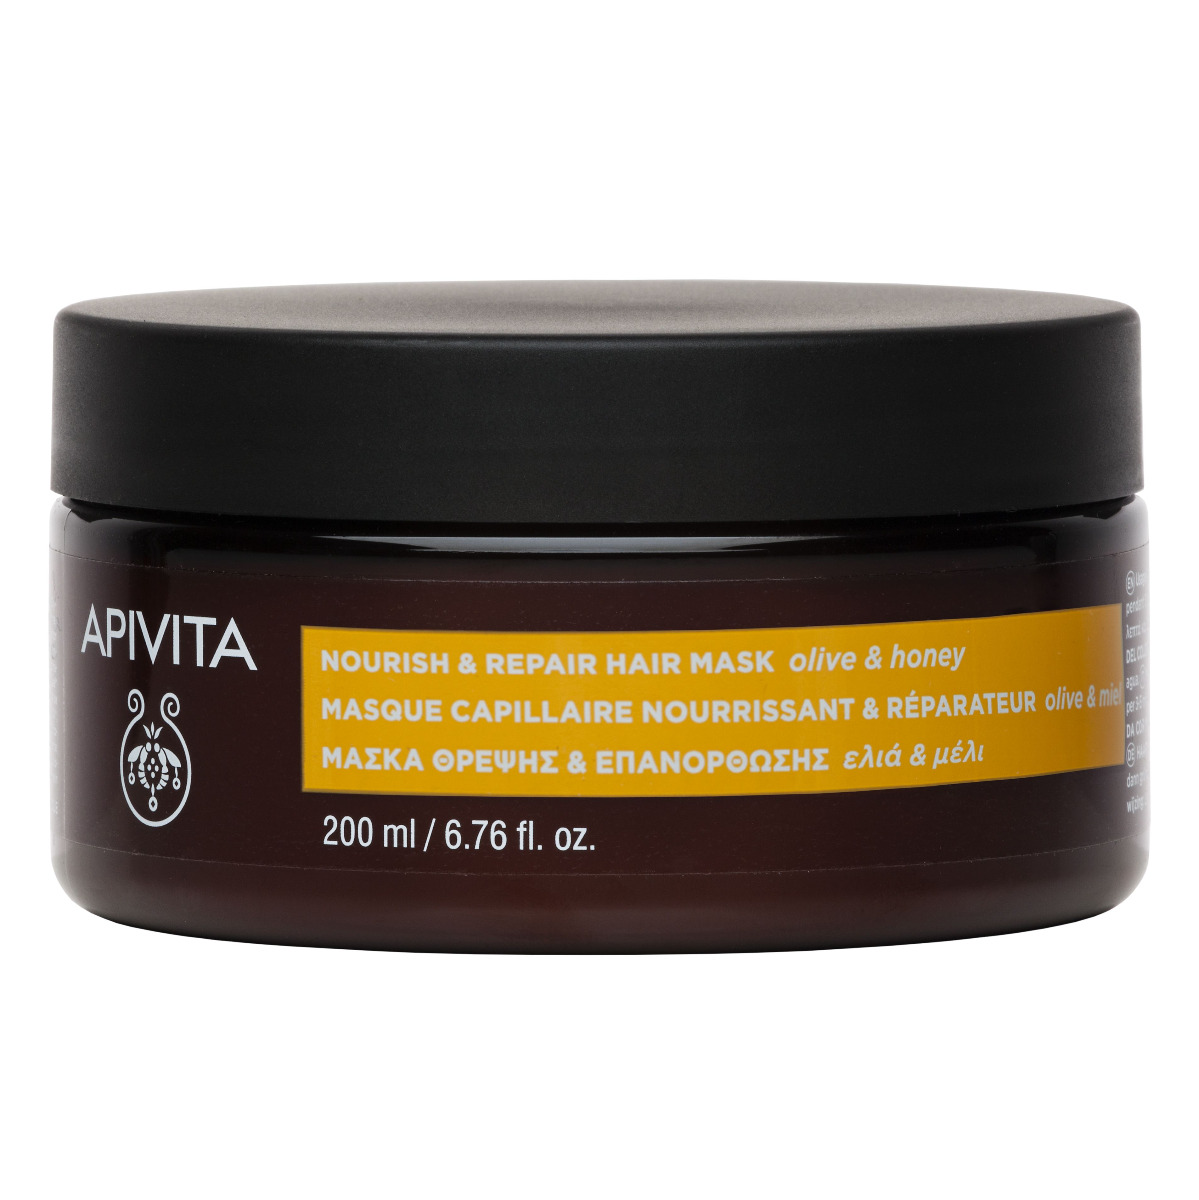 APIVITA Nourish & Repair regenerační vlasová maska 200 ml APIVITA